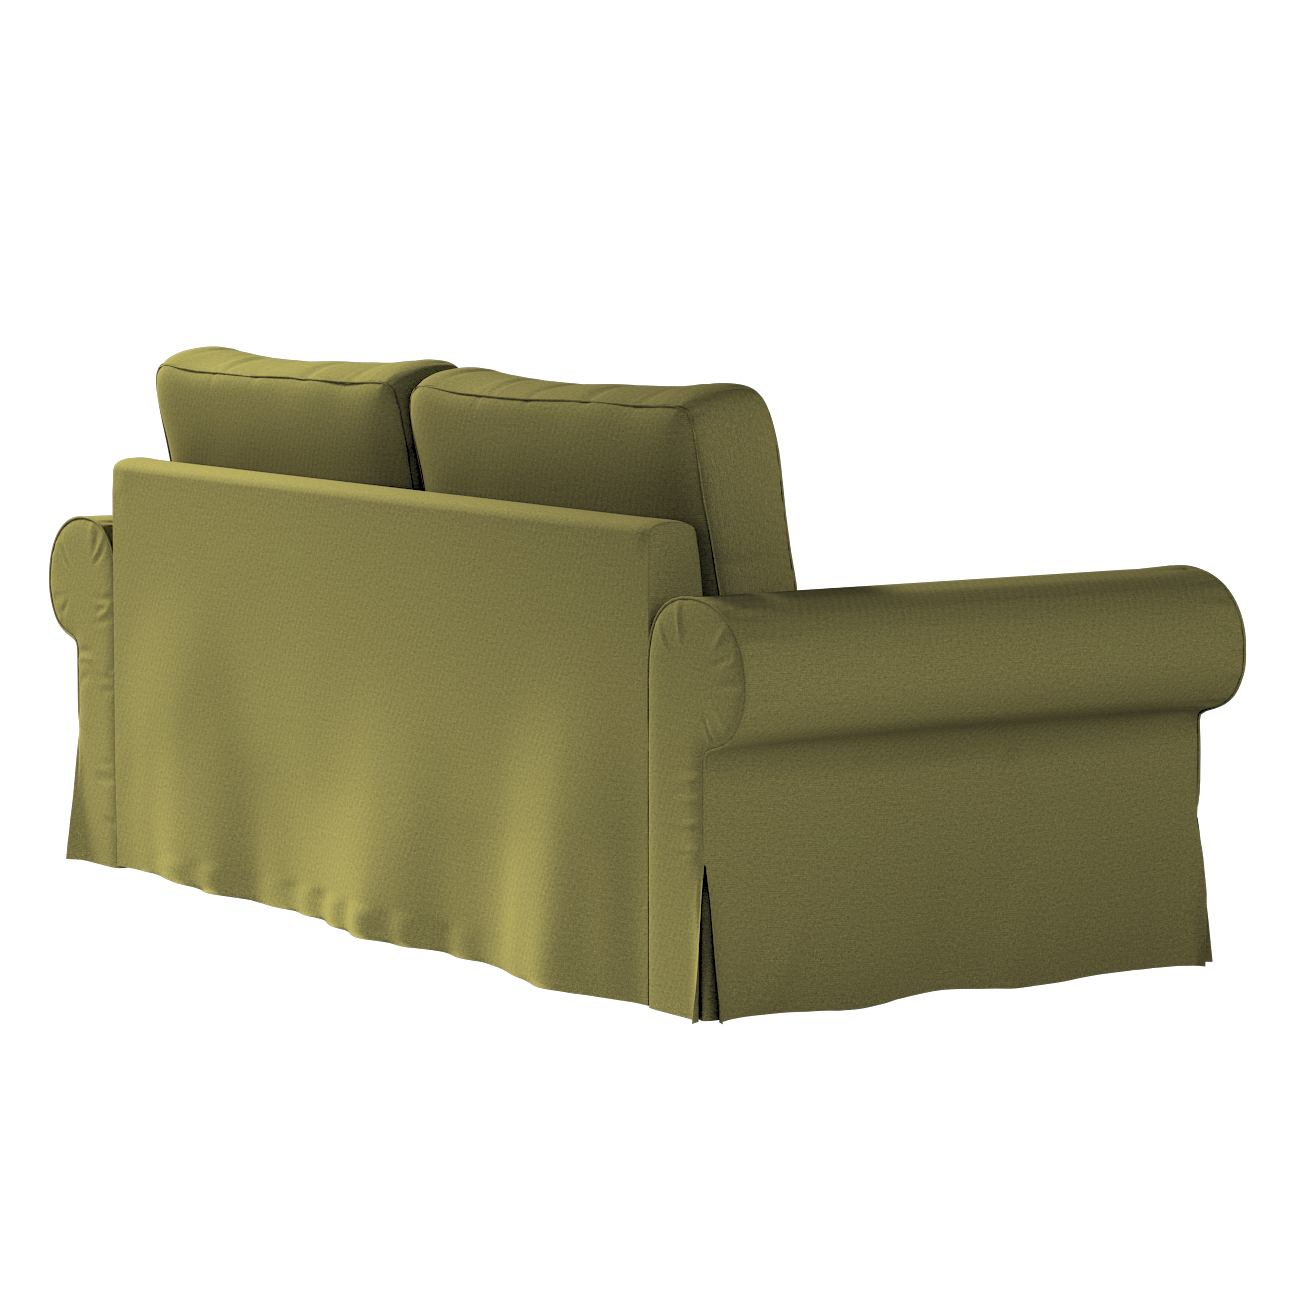 Bezug für Backabro 3-Sitzer Sofa ausklappbar, olivgrün, Bezug für Backabro günstig online kaufen